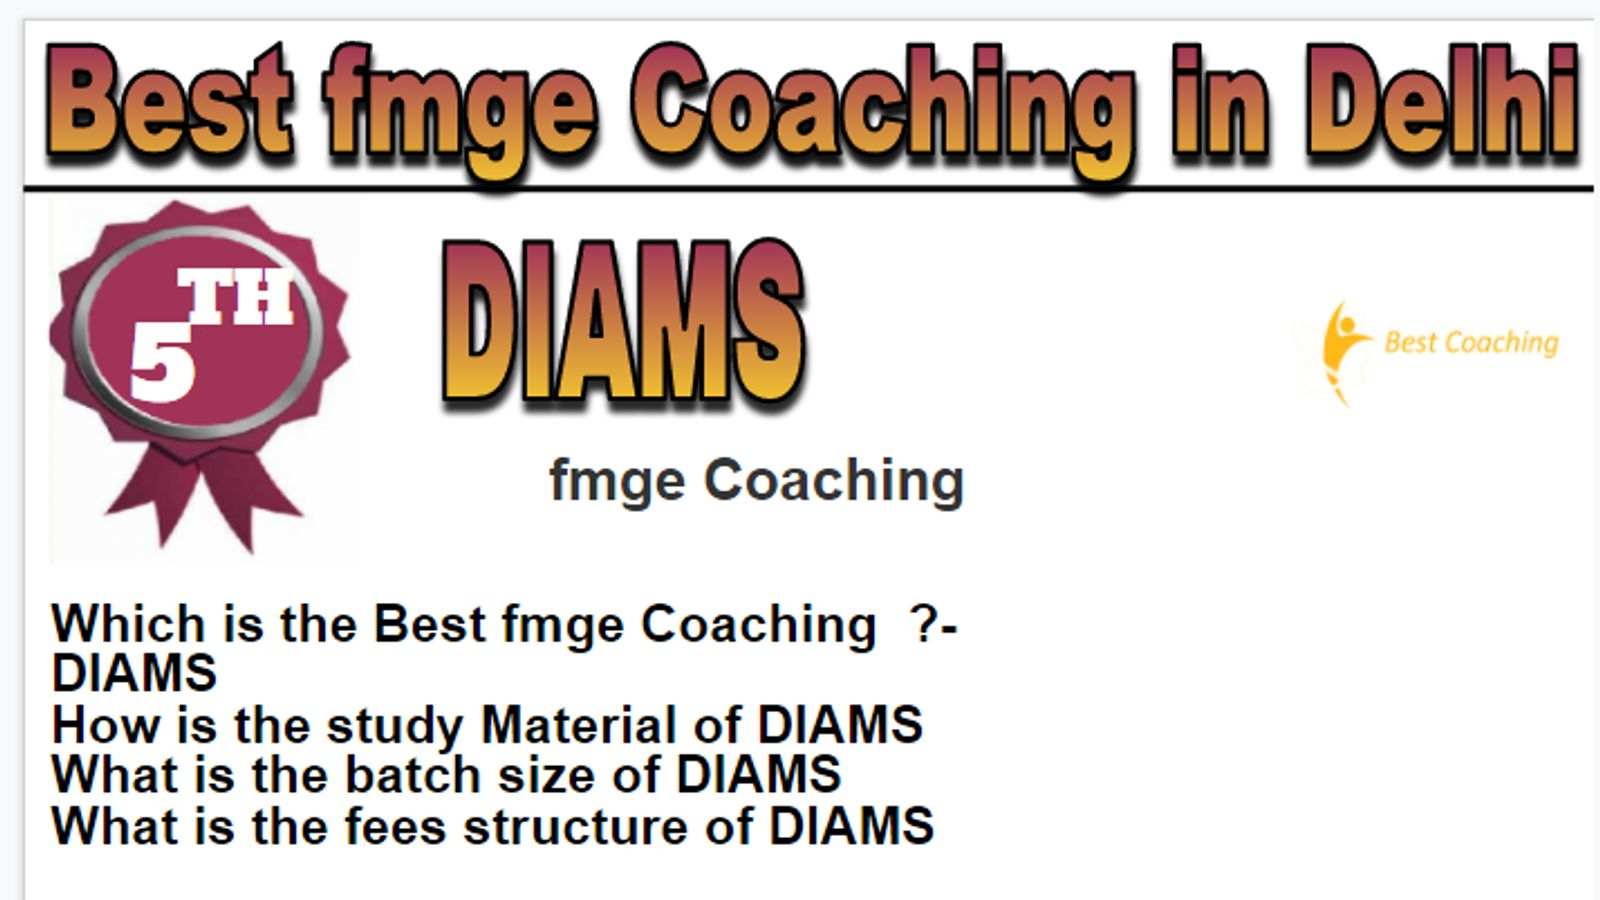 Rank-5 Best fmge coaching in Delhi